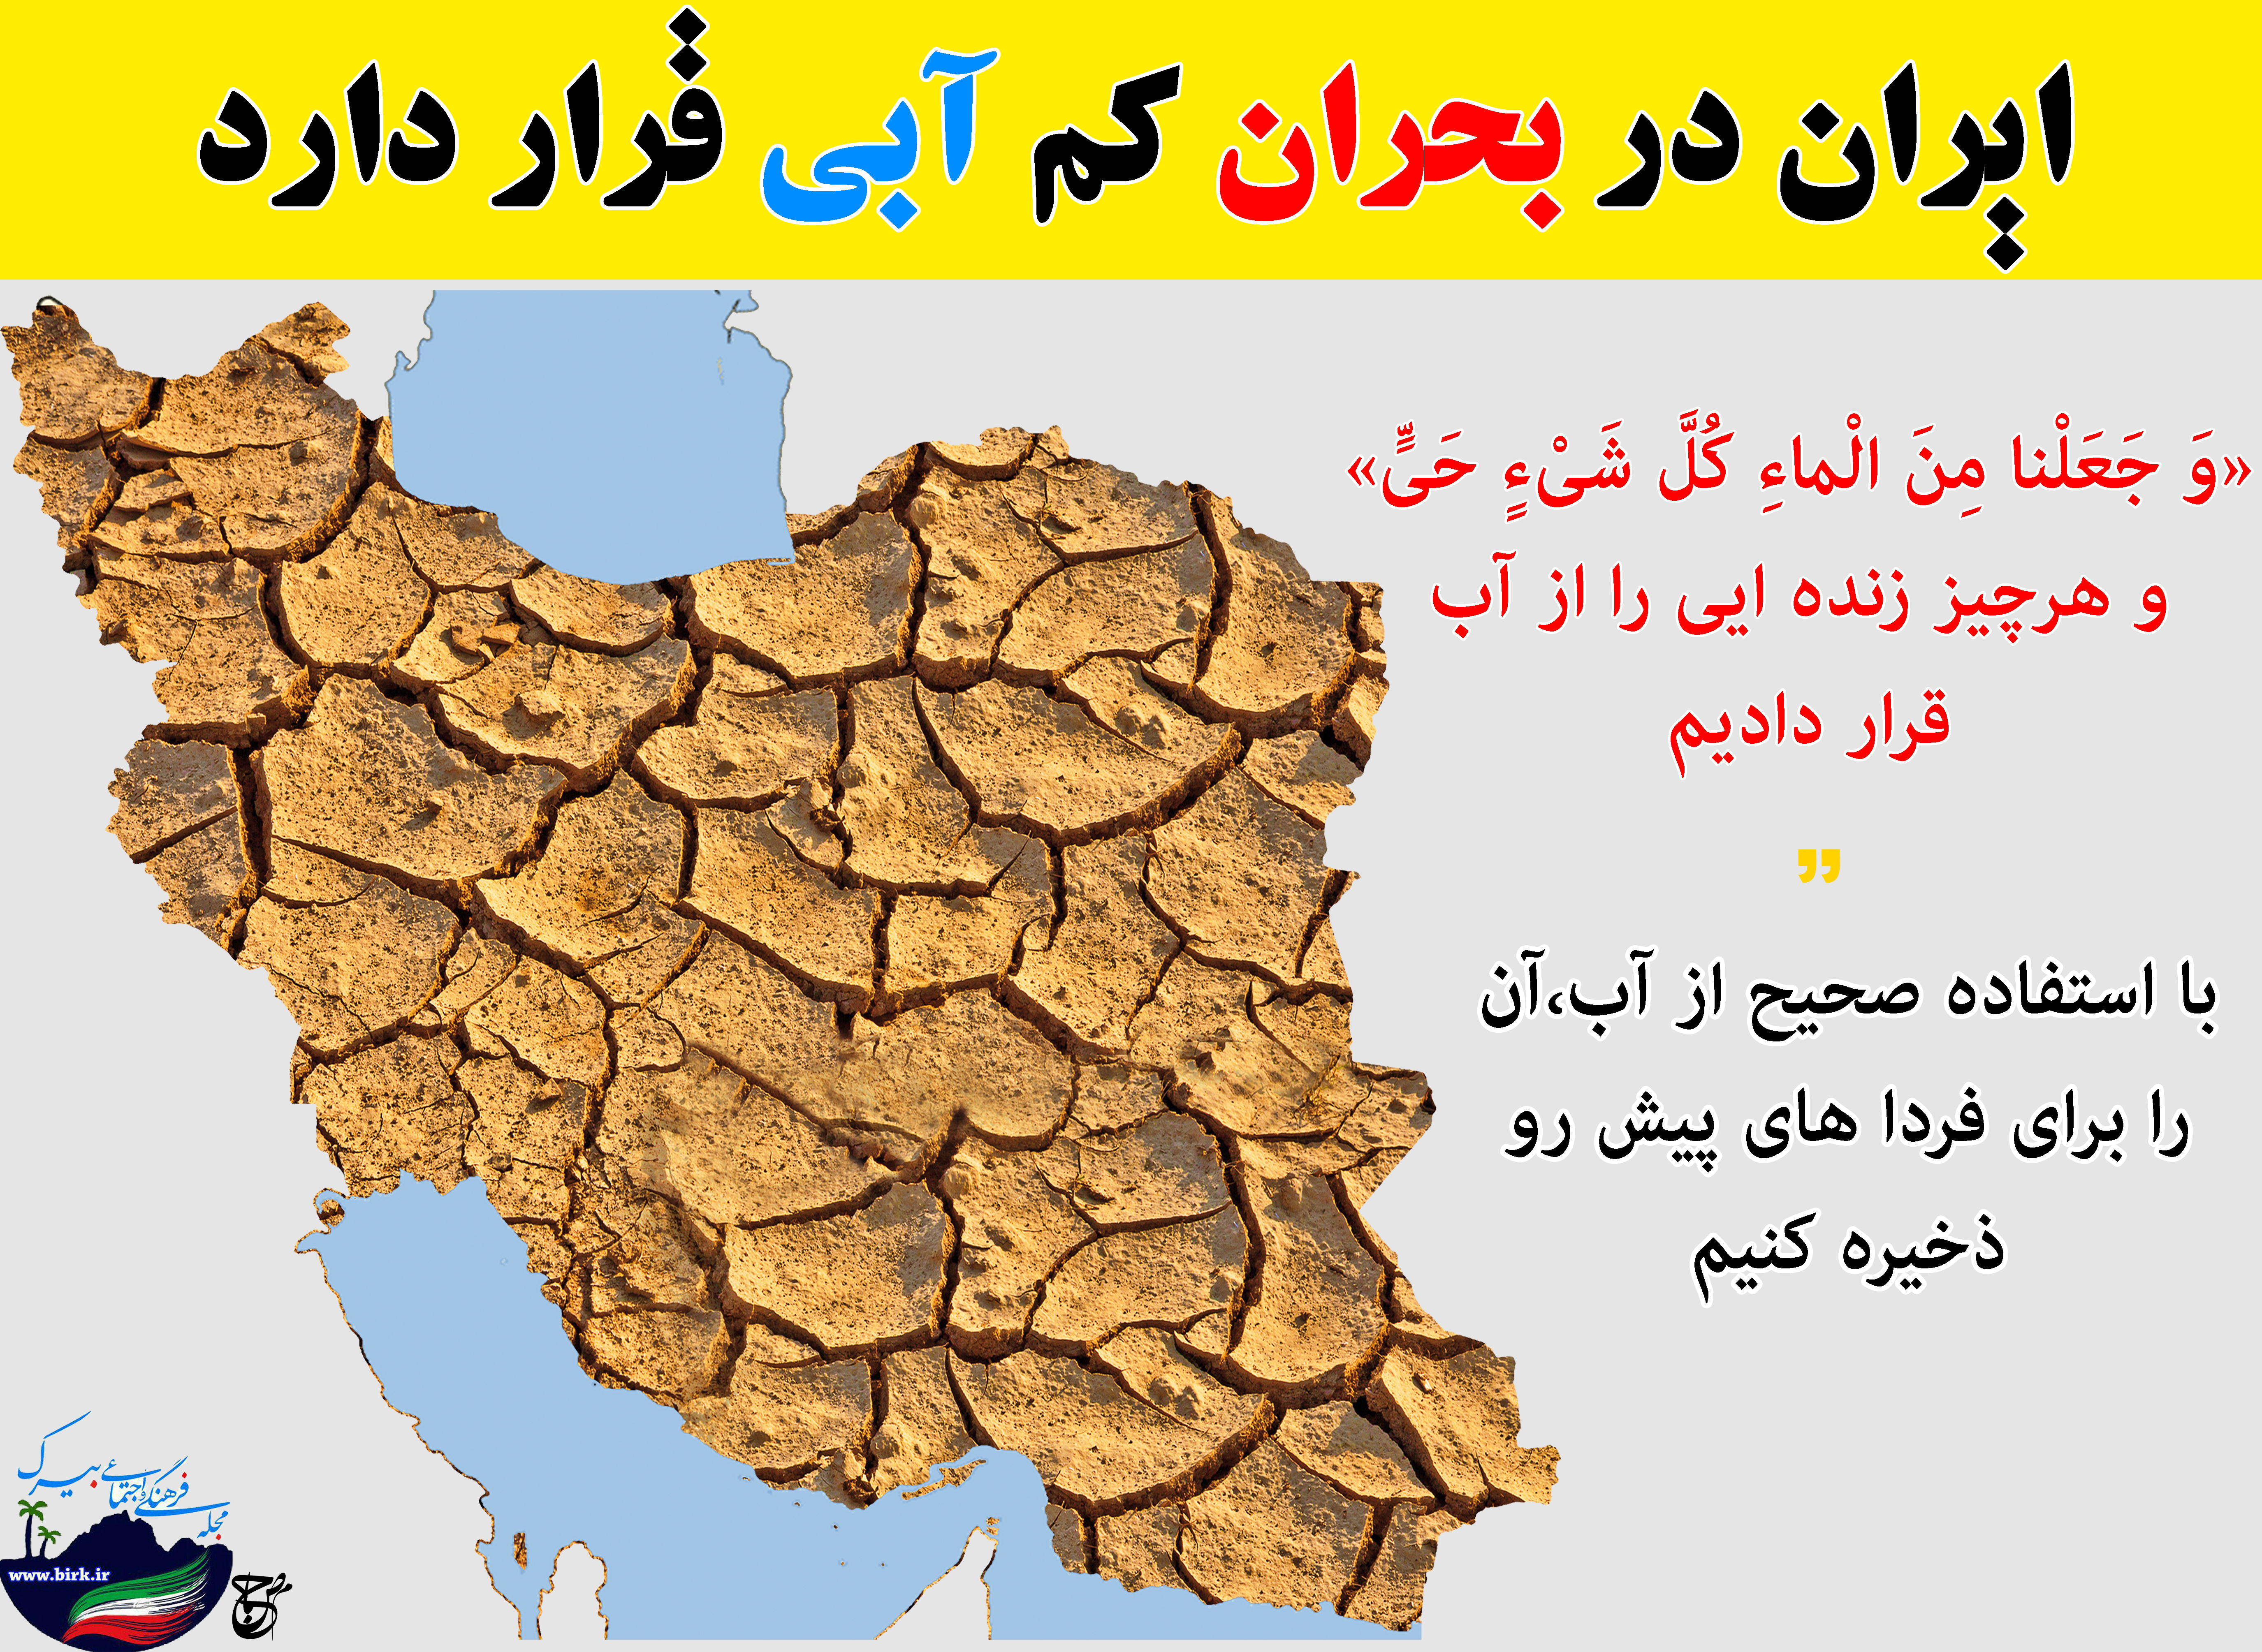 ایران در بحران کم آبی قرار دارد/پوستر اختصاصی